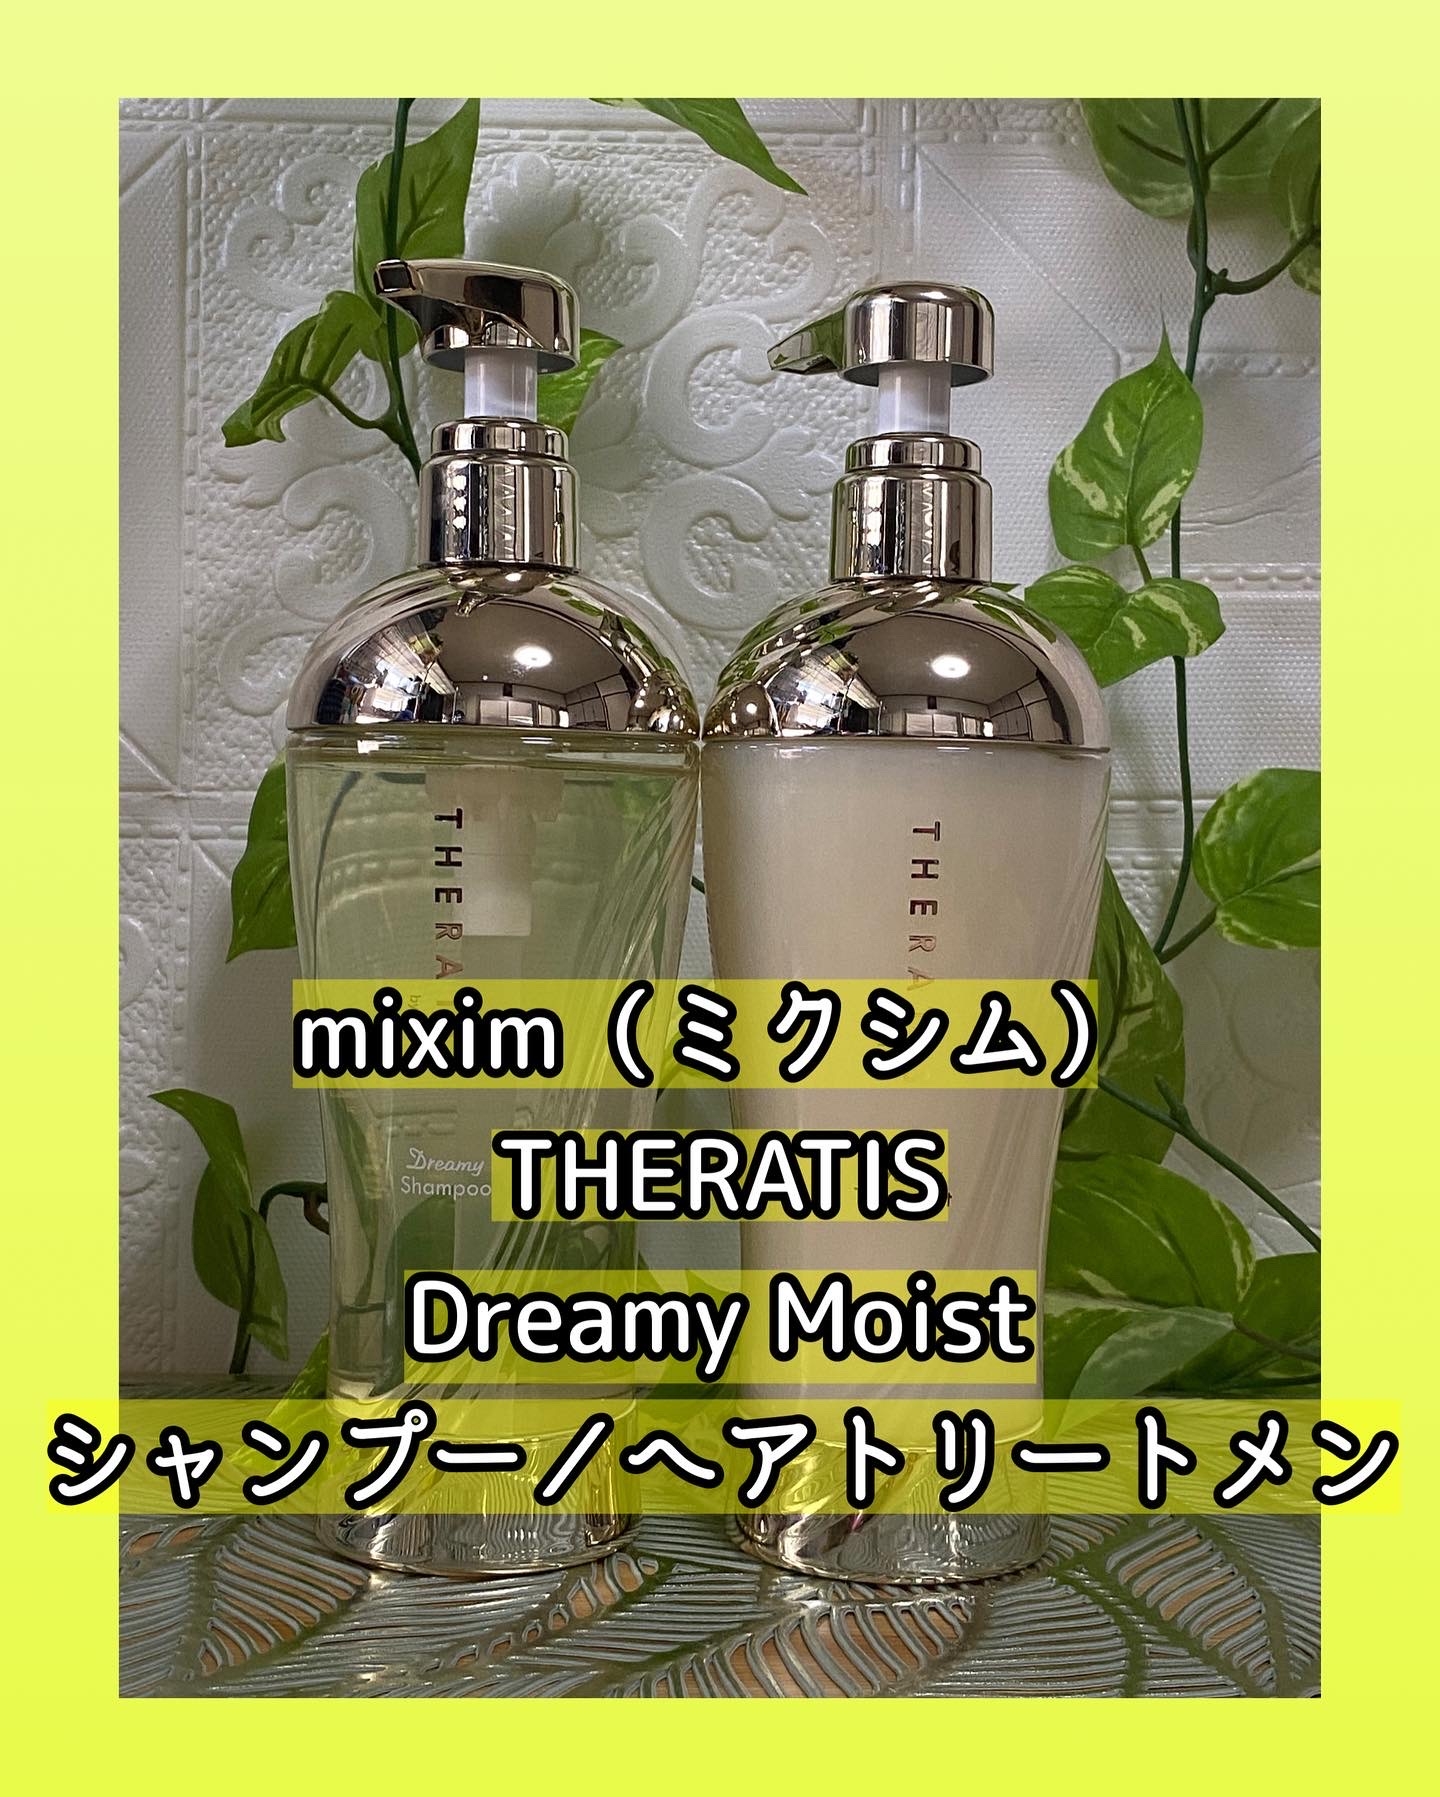 mixim（ミクシム） THERATIS Dreamy Moist シャンプー／ヘアトリートメントを使ったマイピコブーさんのクチコミ画像5